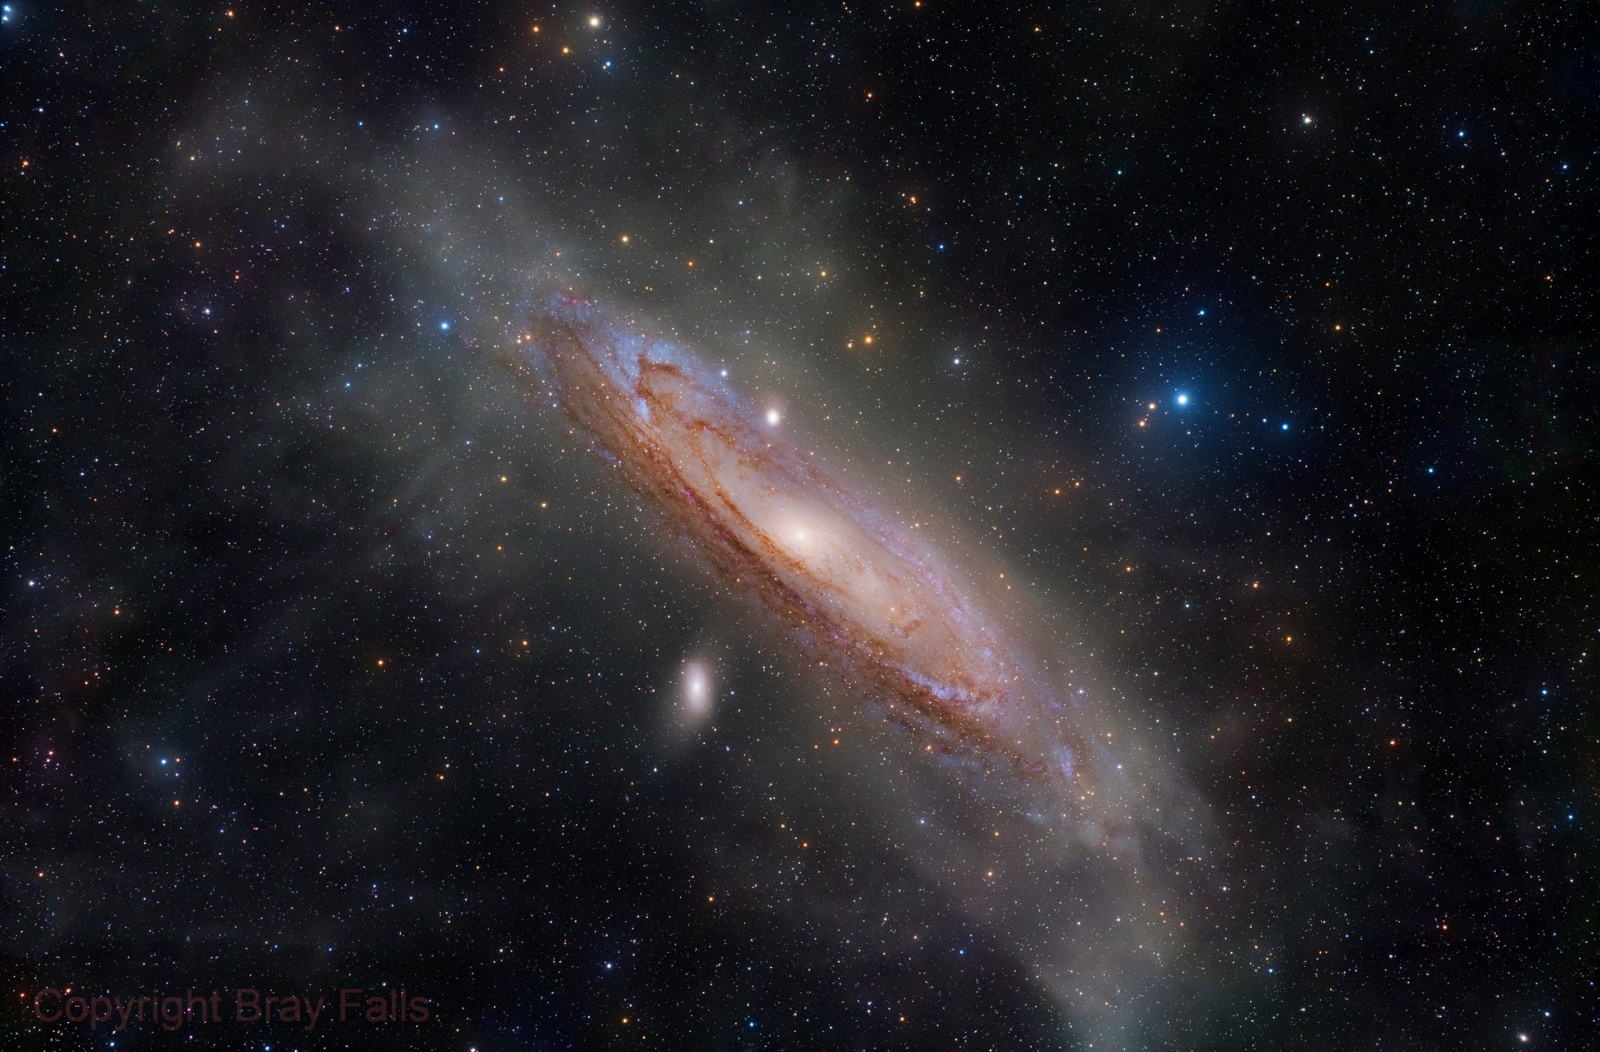 Астрофотоснимок Галактики Андромеды полученный со сверхдлительным накоплением света. На изображении видны внешние — практически незаметные во время прямых наблюдений — области спиральных ветвей и (частично) сферического гало этой галактики. Автор фотоснимка Bray Falls  